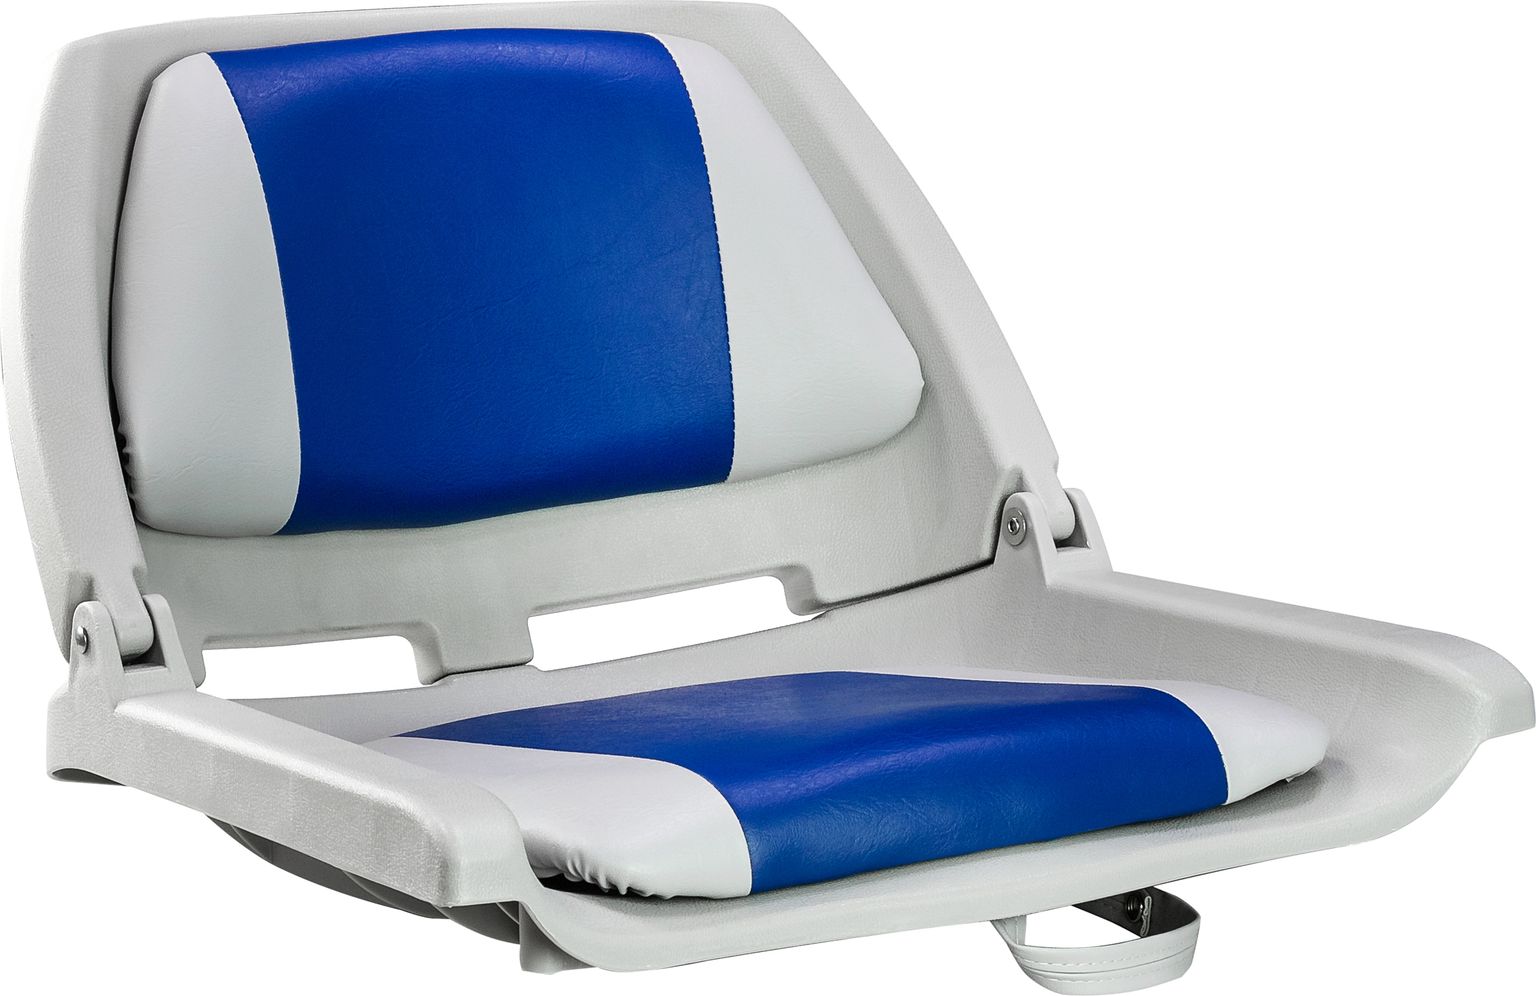 Кресло мягкое складное, обивка винил, цвет серый/синий, Marine Rocket 75109GB-MR кресло складное мягкое skipper серый темно серый 1061057